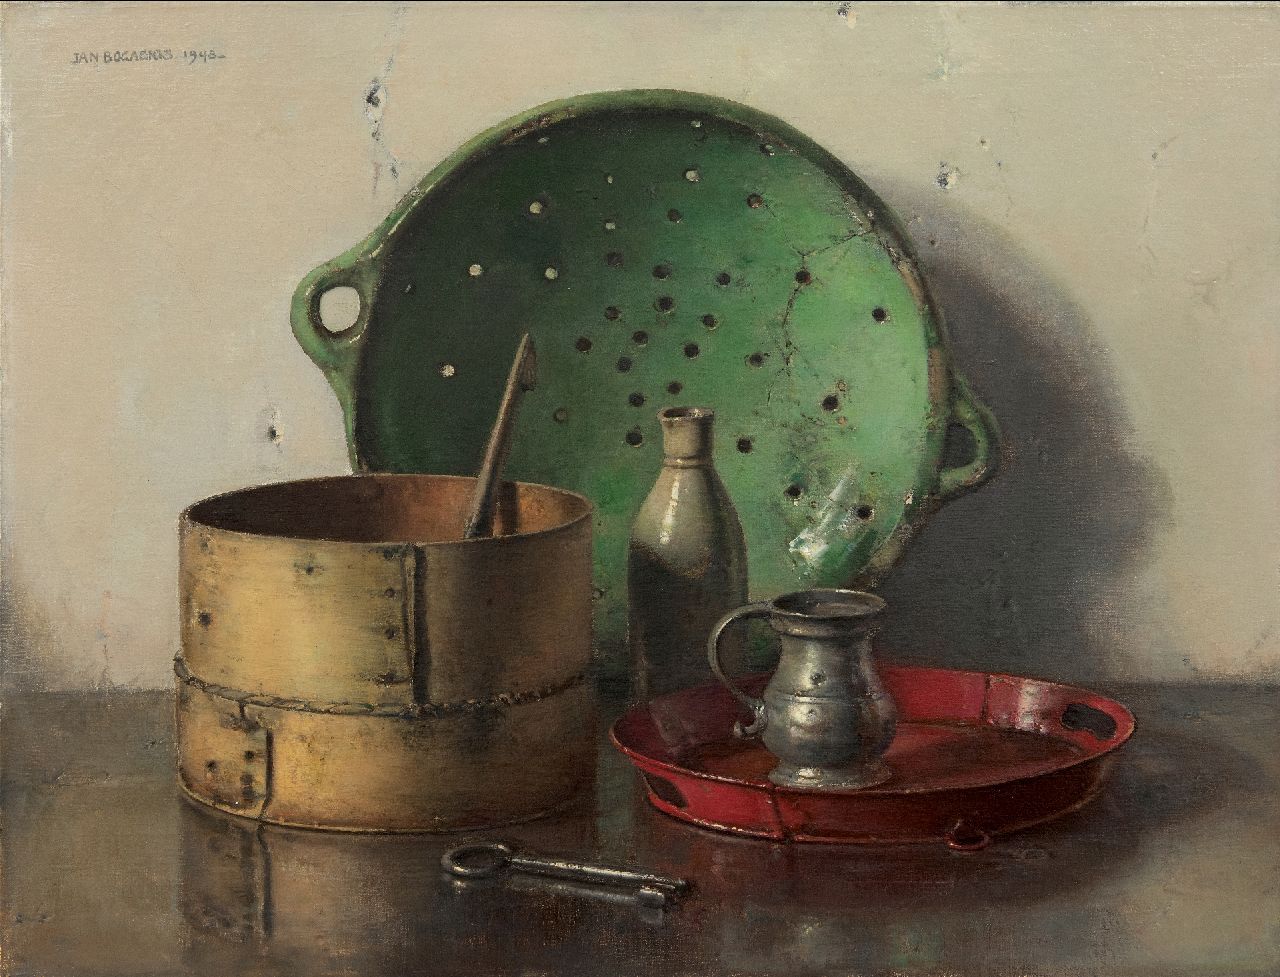 Bogaerts J.J.M.  | Johannes Jacobus Maria 'Jan' Bogaerts, Stilleven met groene zeef, olieverf op doek 50,2 x 66,1 cm, gesigneerd linksboven en gedateerd 1948